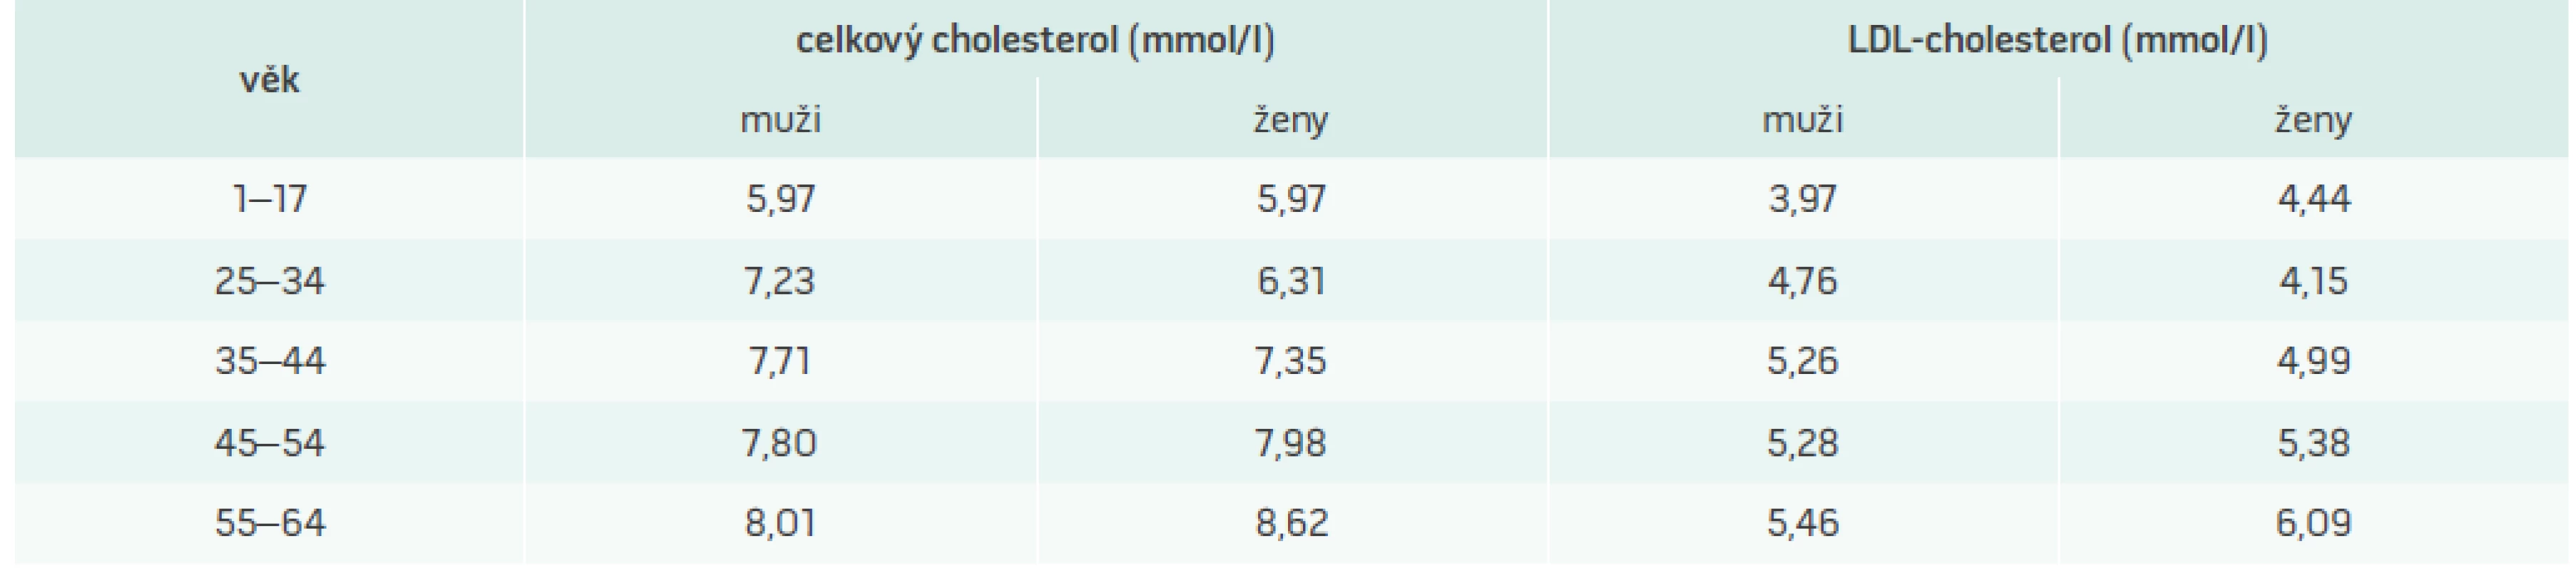 Hodnoty 95. percentilu pro celkový a LDL-cholesterol specifické pro českou populaci podle věku a pohlaví. Upraveno podle [12]